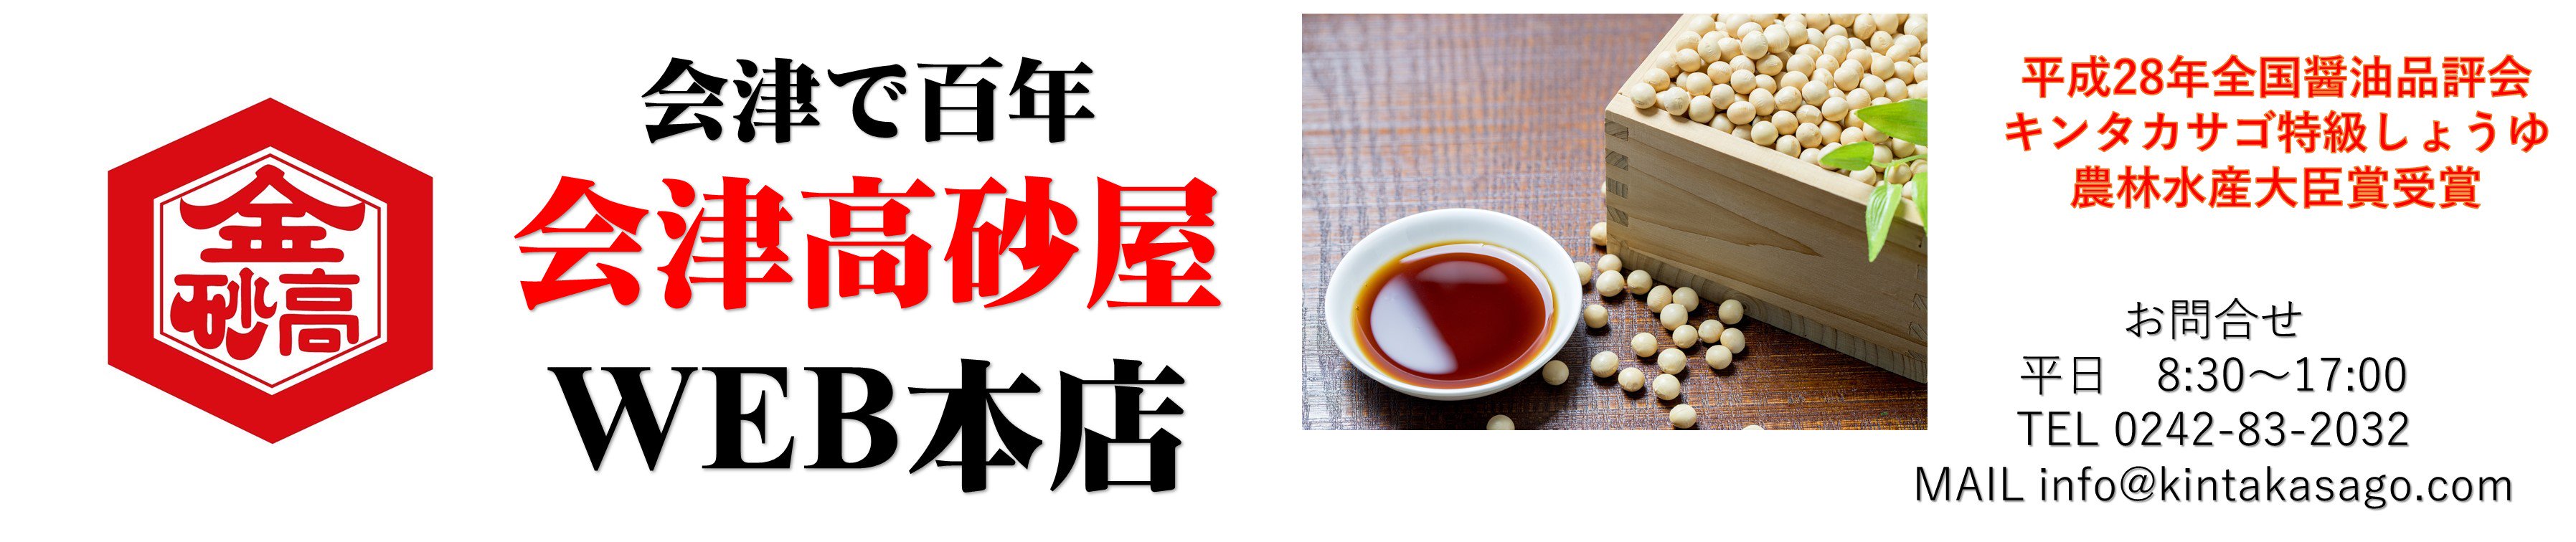 キンタカサゴ醤油と郷土の味を会津からお届け「会津高砂屋」